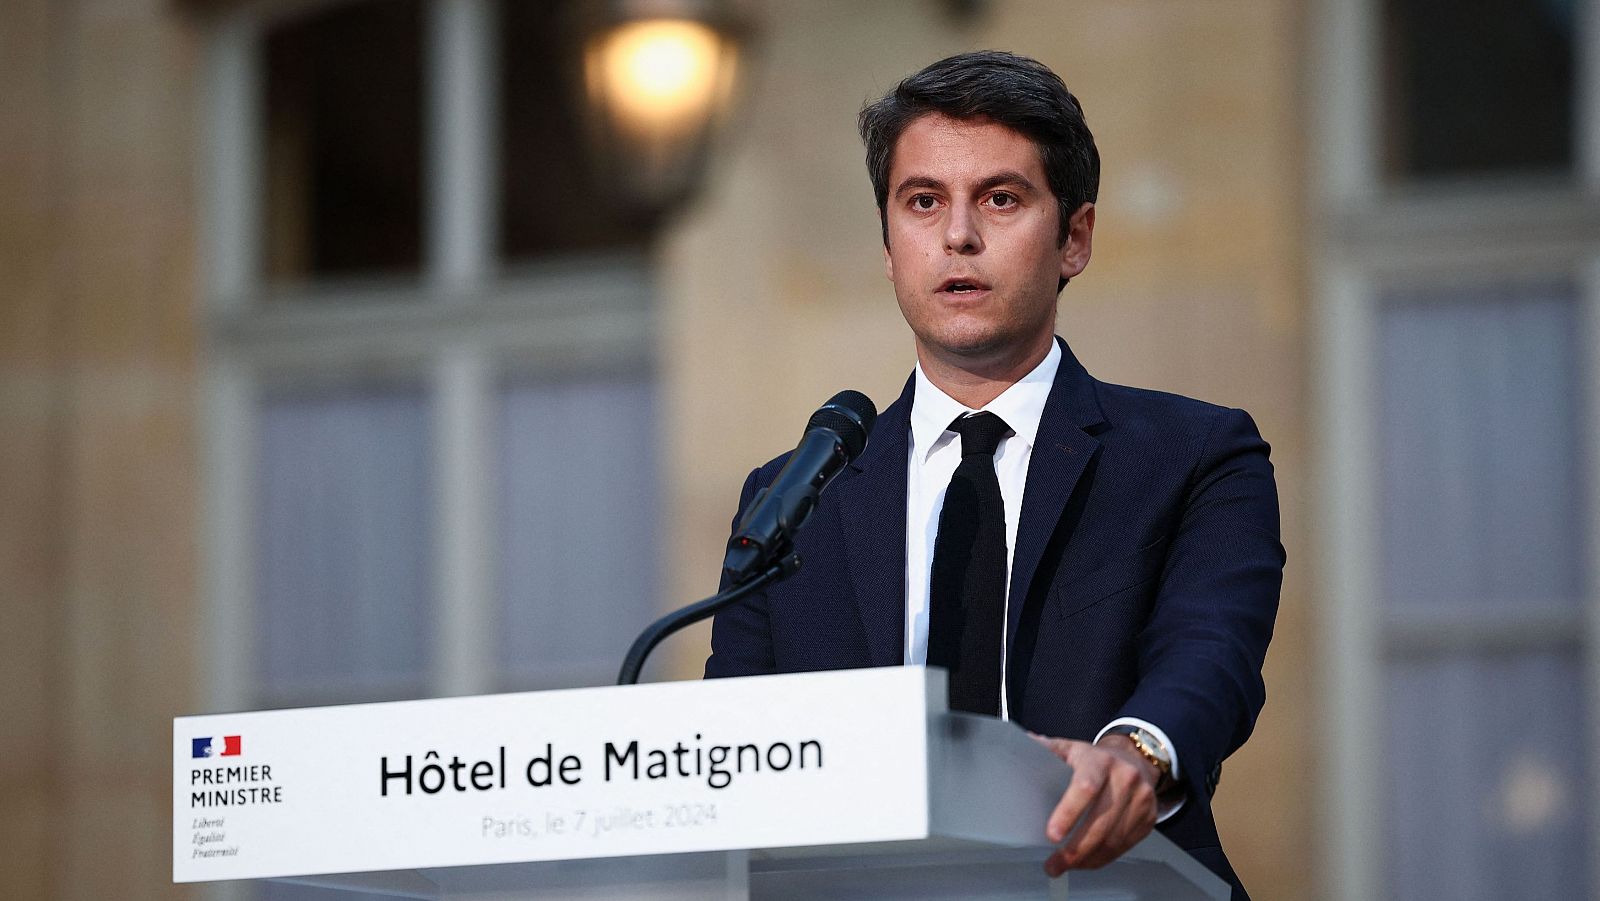 El primer ministro, Gabriel Attal, presentará su dimisión a Macron pero se mantendrá en el cargo "el tiempo necesario"